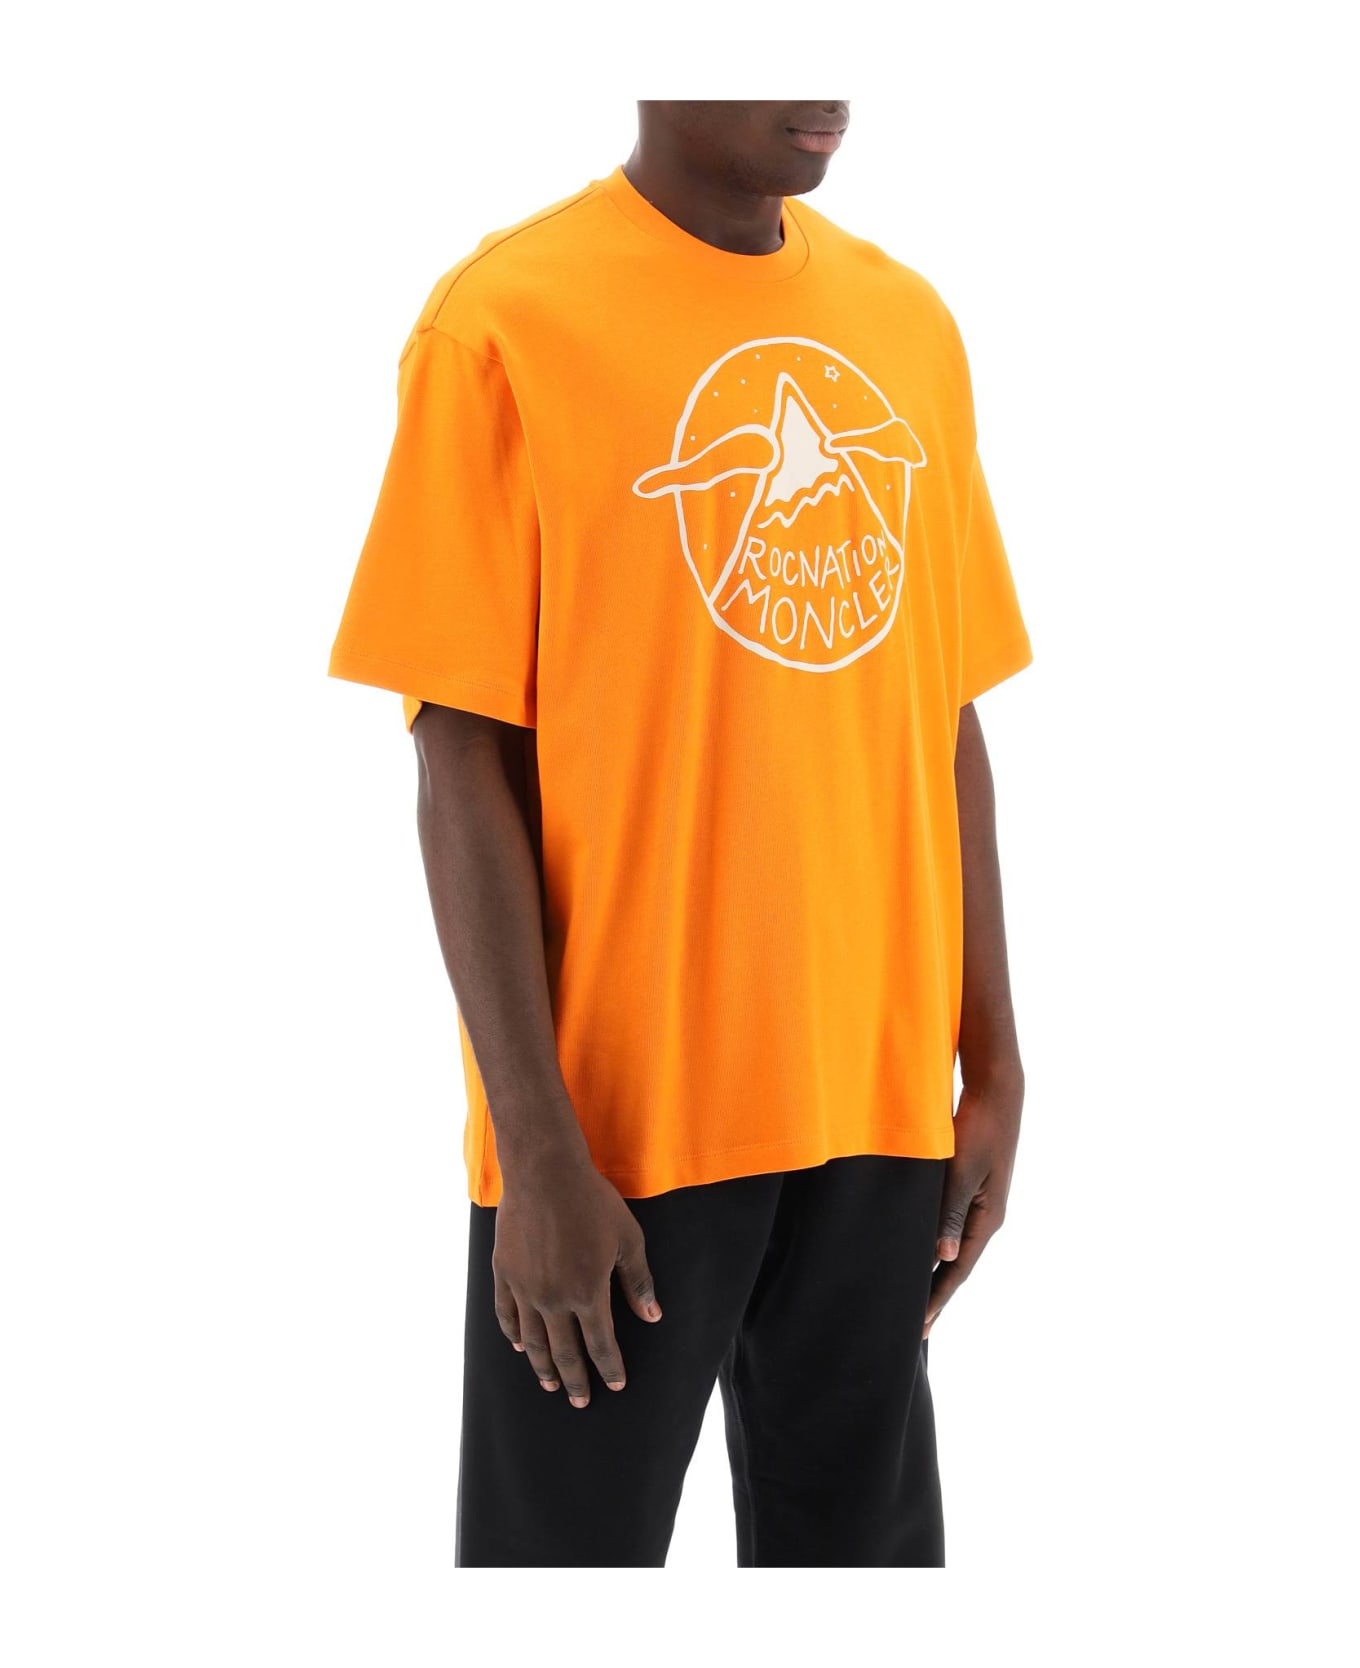 Moncler Genius Logo T-shirt - Yellow & Orange